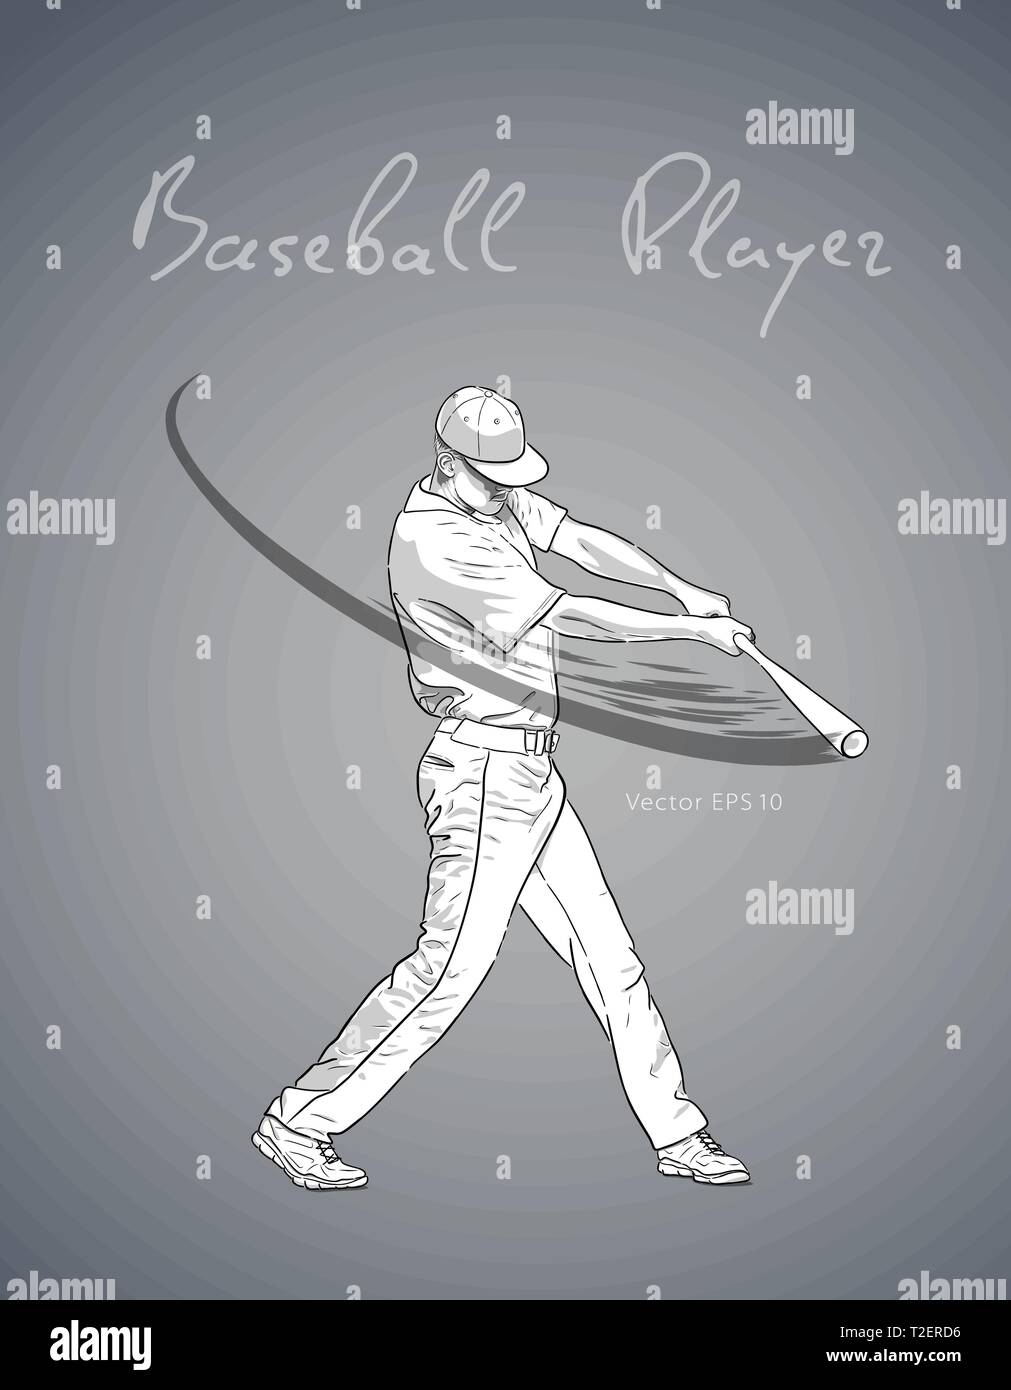 Illustration d'un joueur de baseball avec bat frapper la balle. Vector hand drawn illustration Illustration de Vecteur